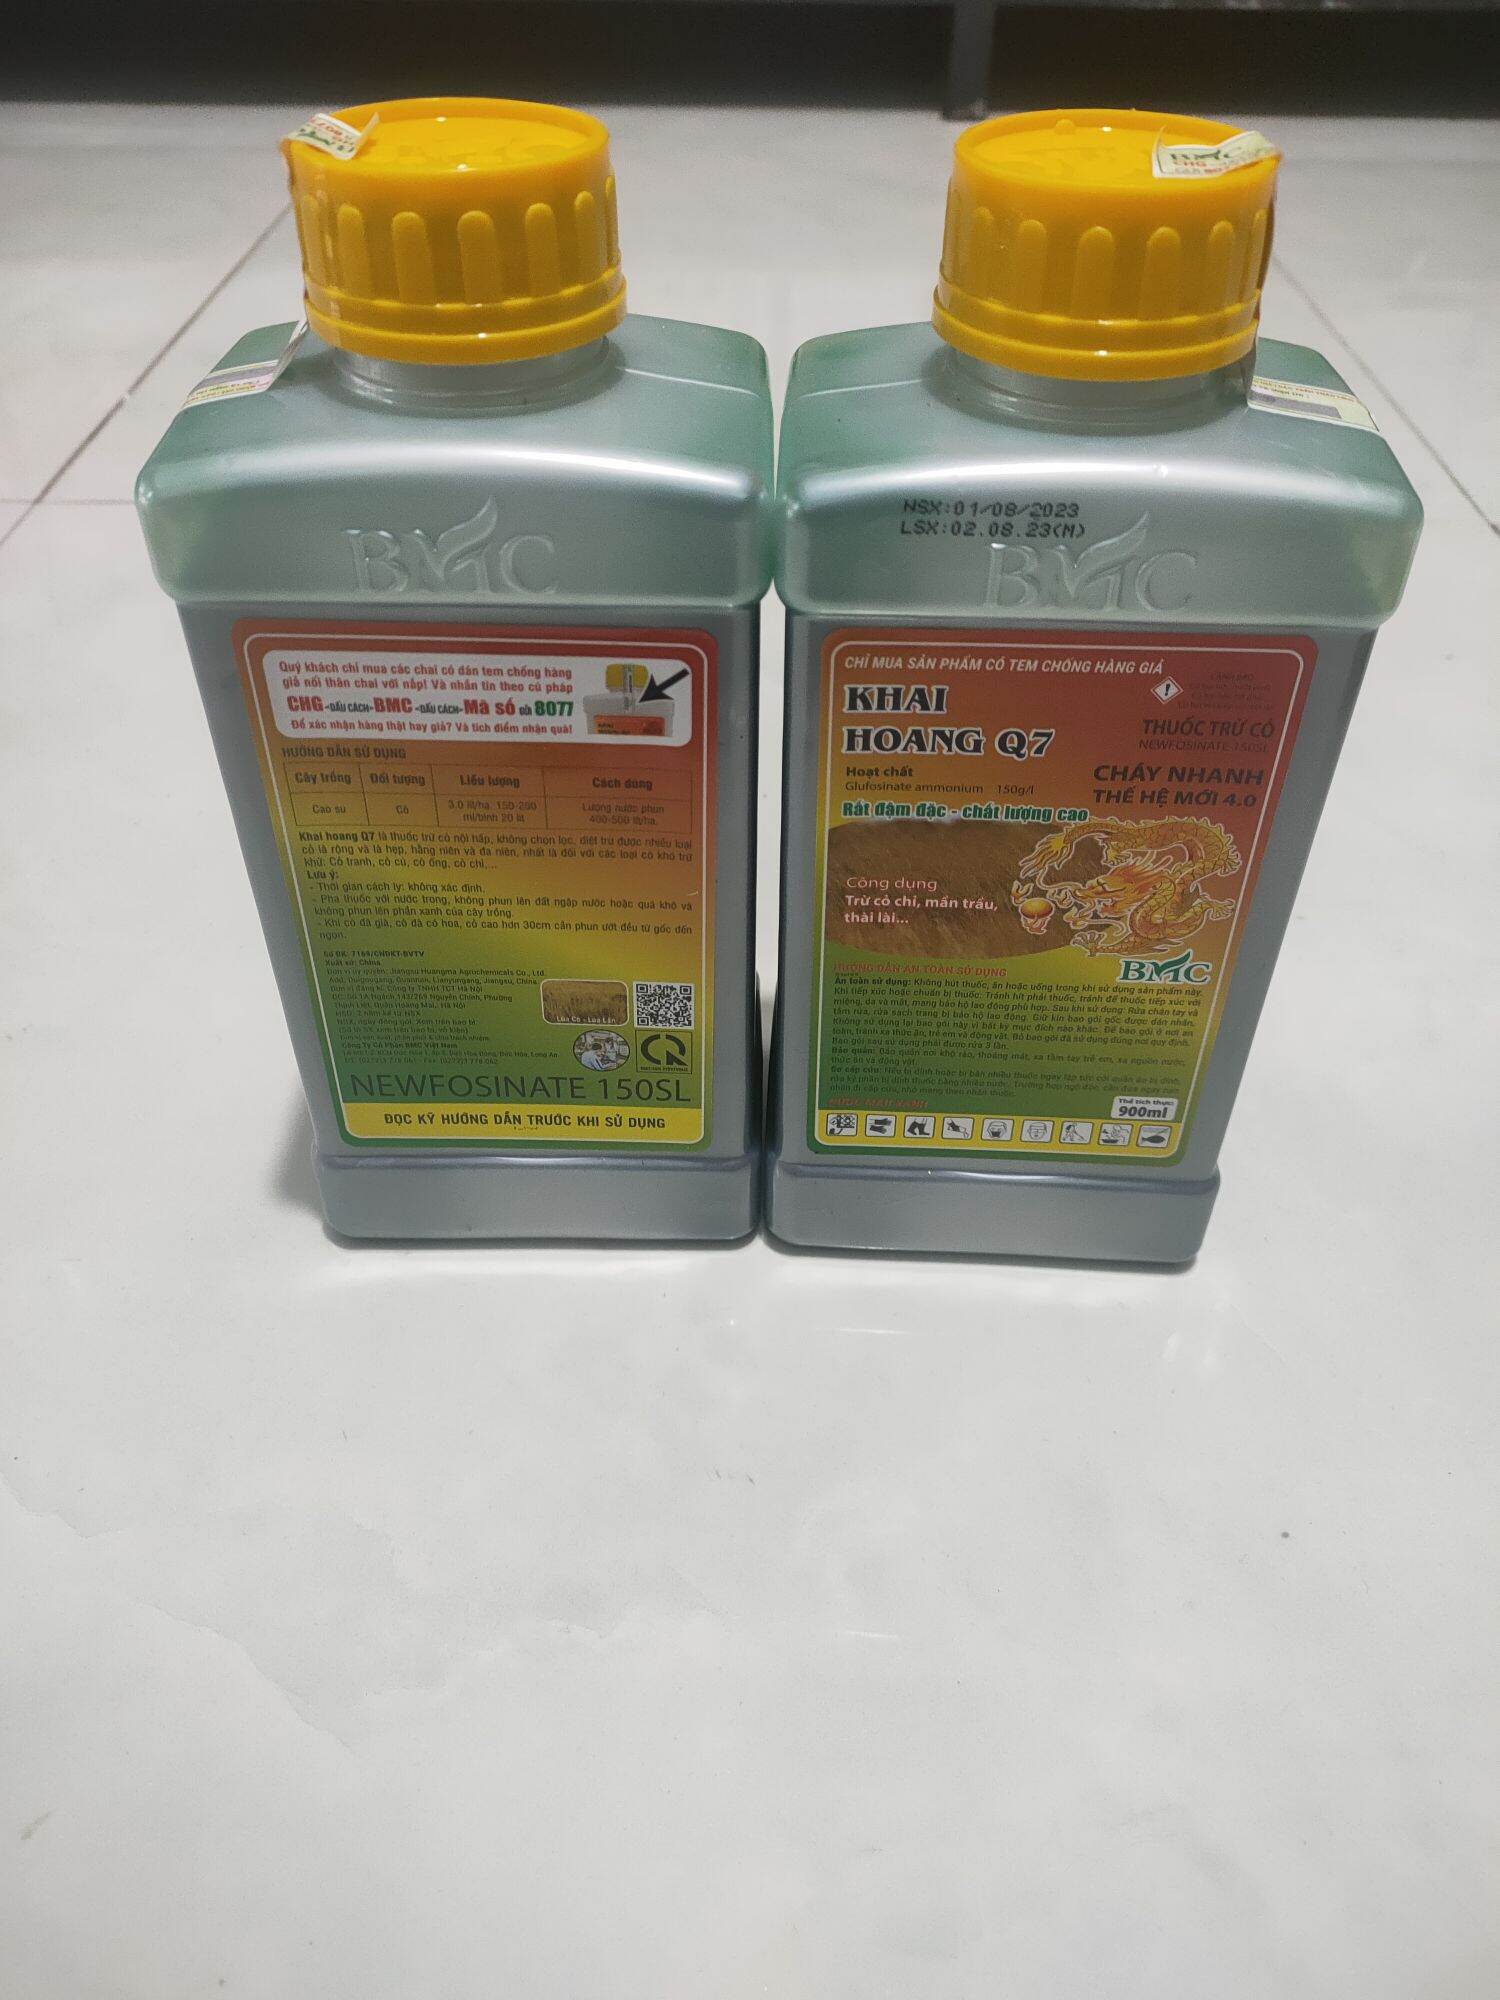 THUỐC TRỪ CỎ KHAI HOANG Q7 900ml hoạt chất: Glufosinate-ammonium 150g/l công dụng trừ cỏ chỉmần trầuthài lài...